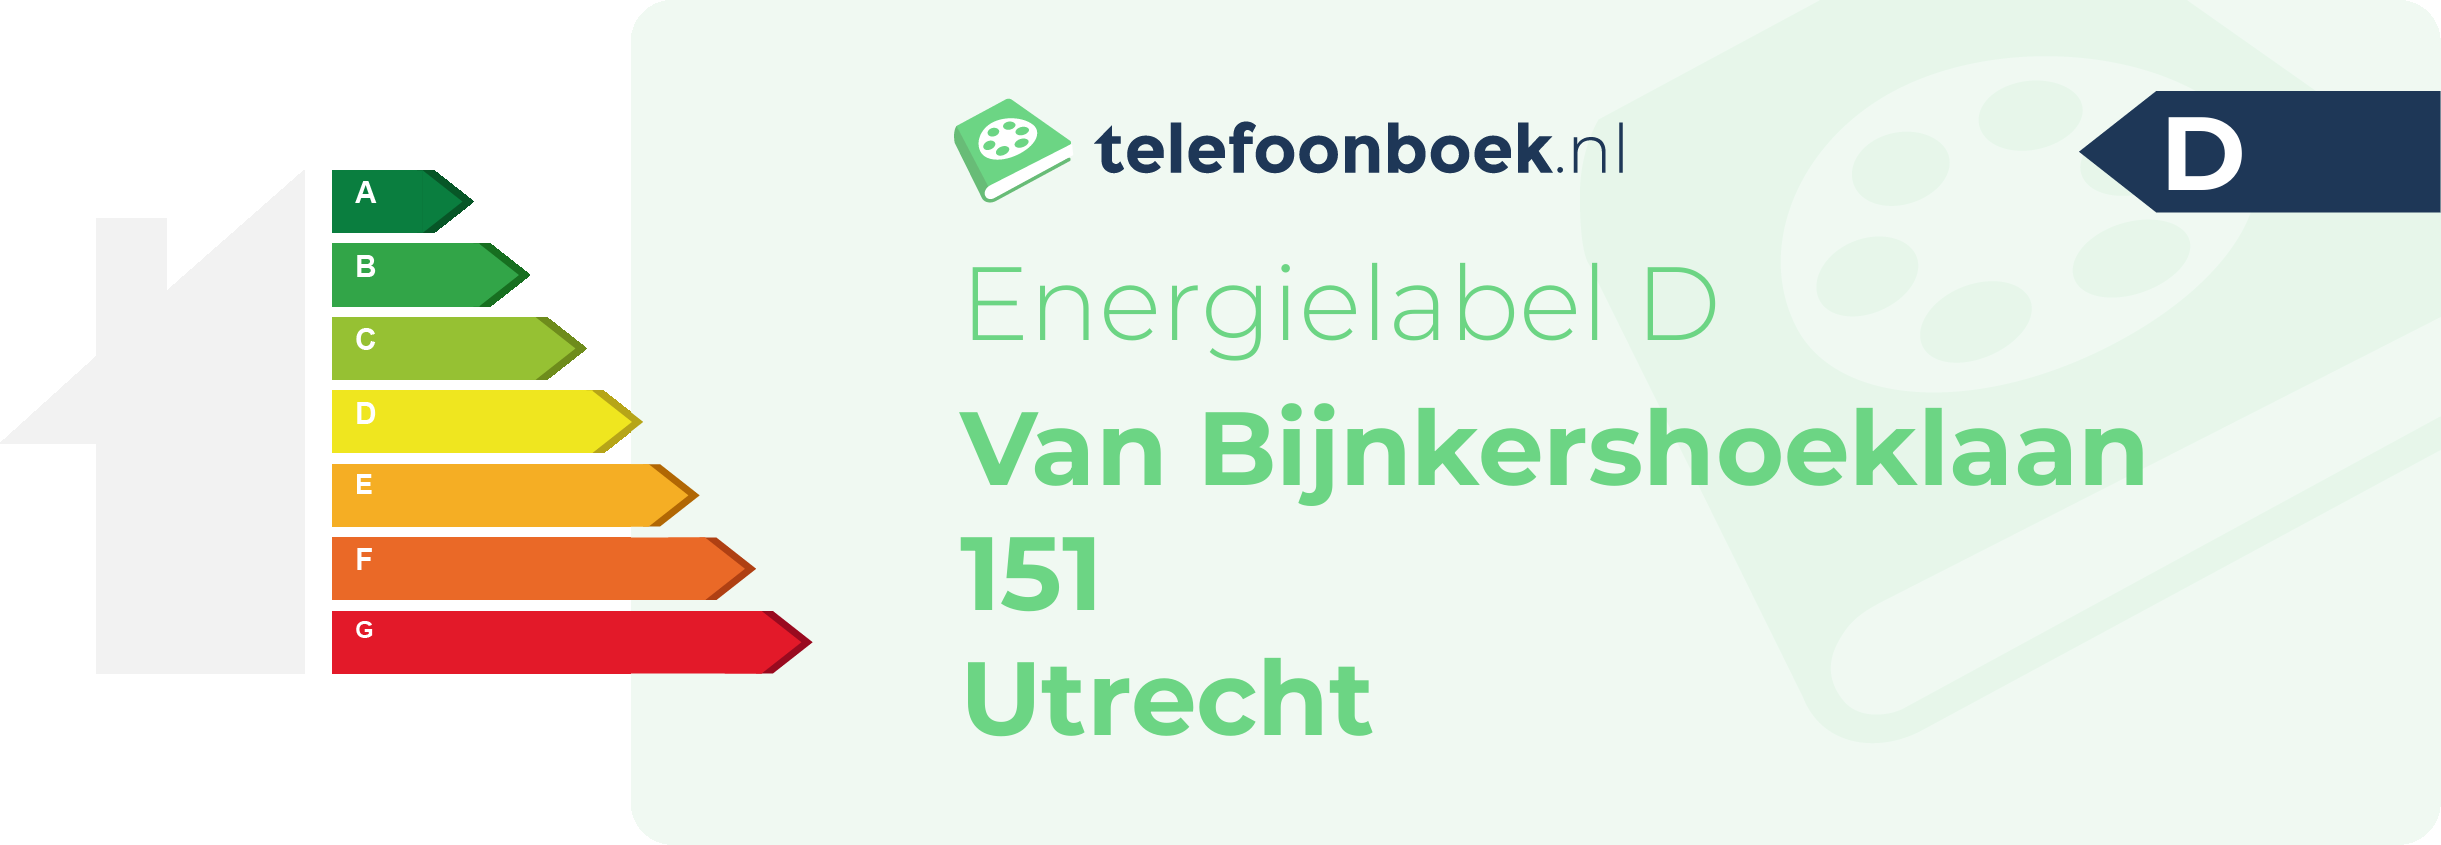 Energielabel Van Bijnkershoeklaan 151 Utrecht